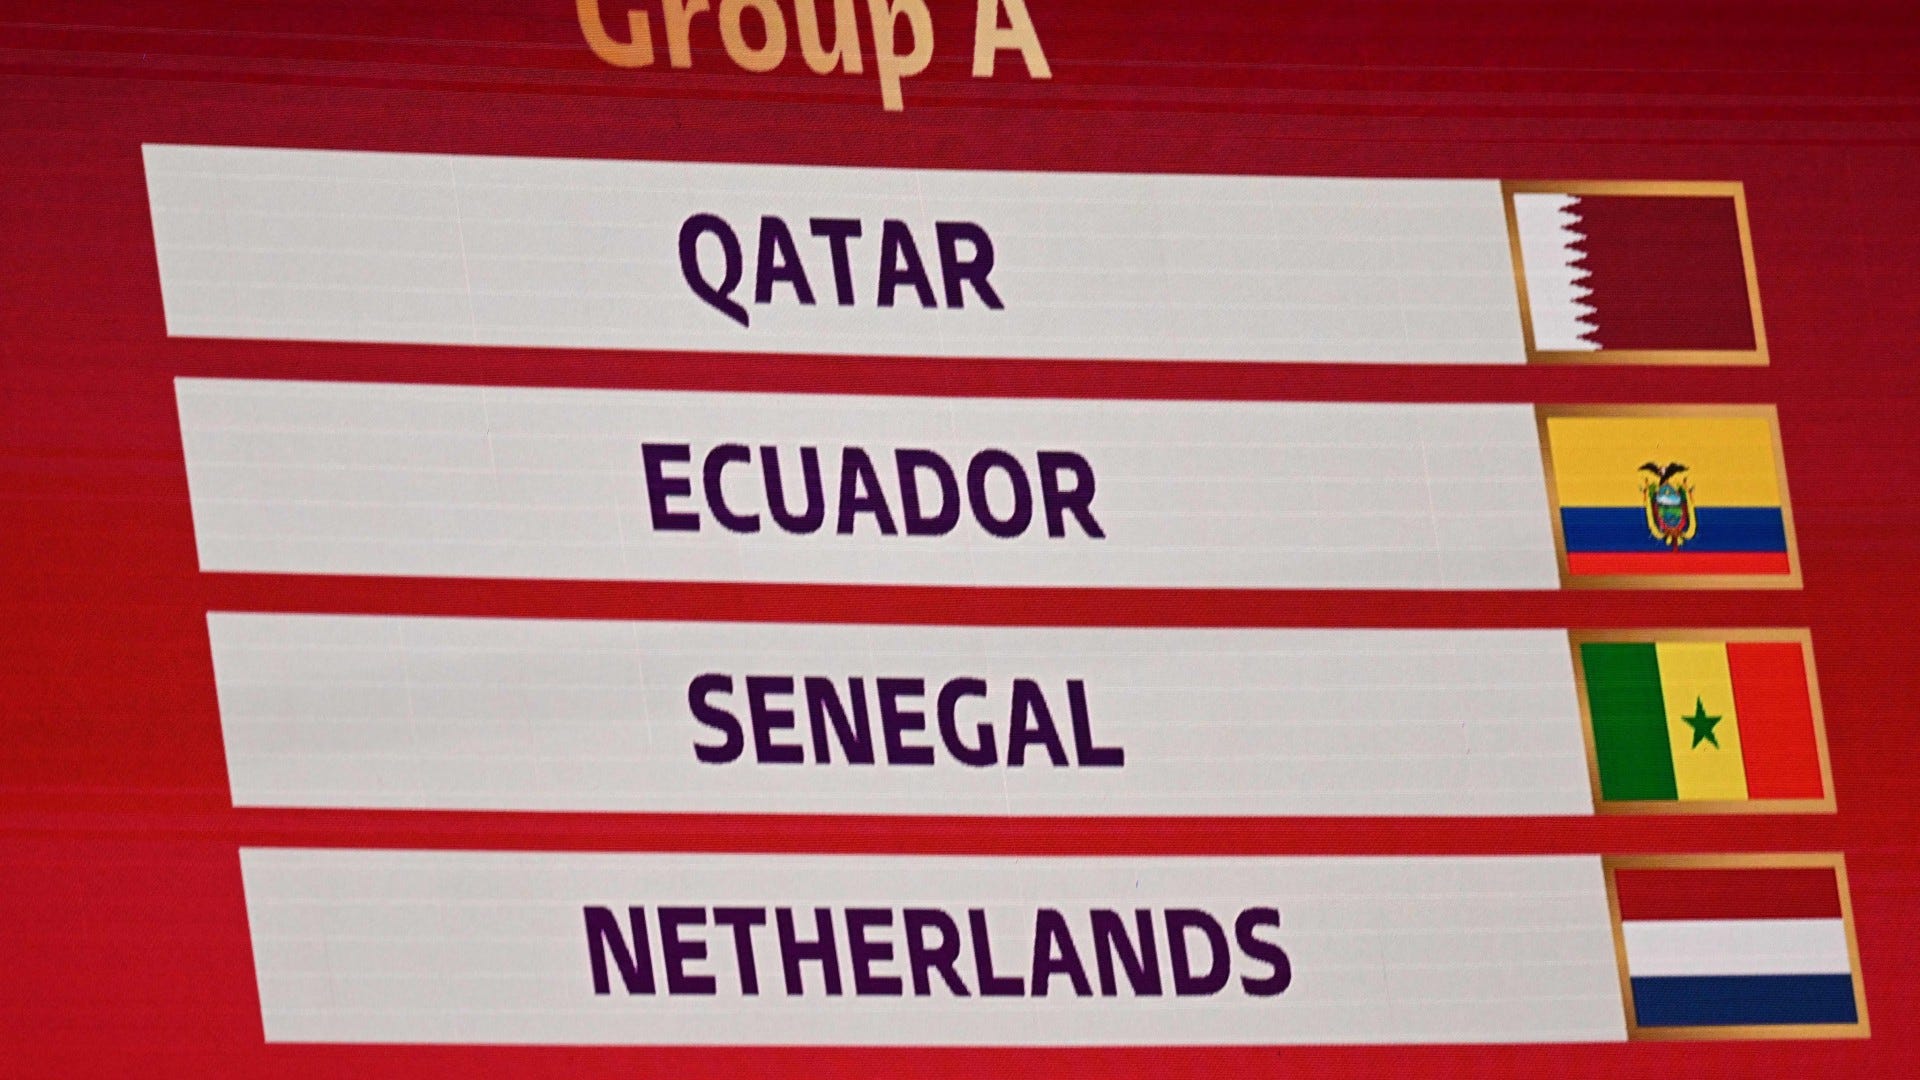 2022 FIFA World Cup Groep A – Qatar, Ecuador, Senegal en Nederland: data, tijden, tv-uitzendingen en live wedstrijden